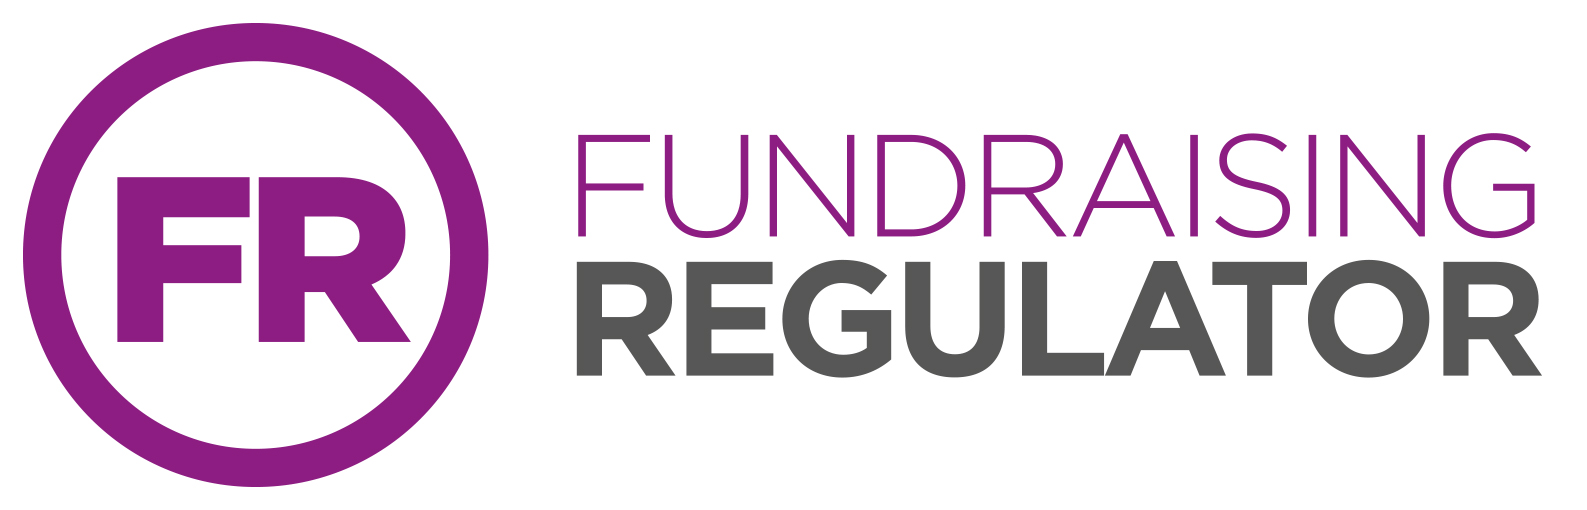 The Fundraiser Regulator's logo